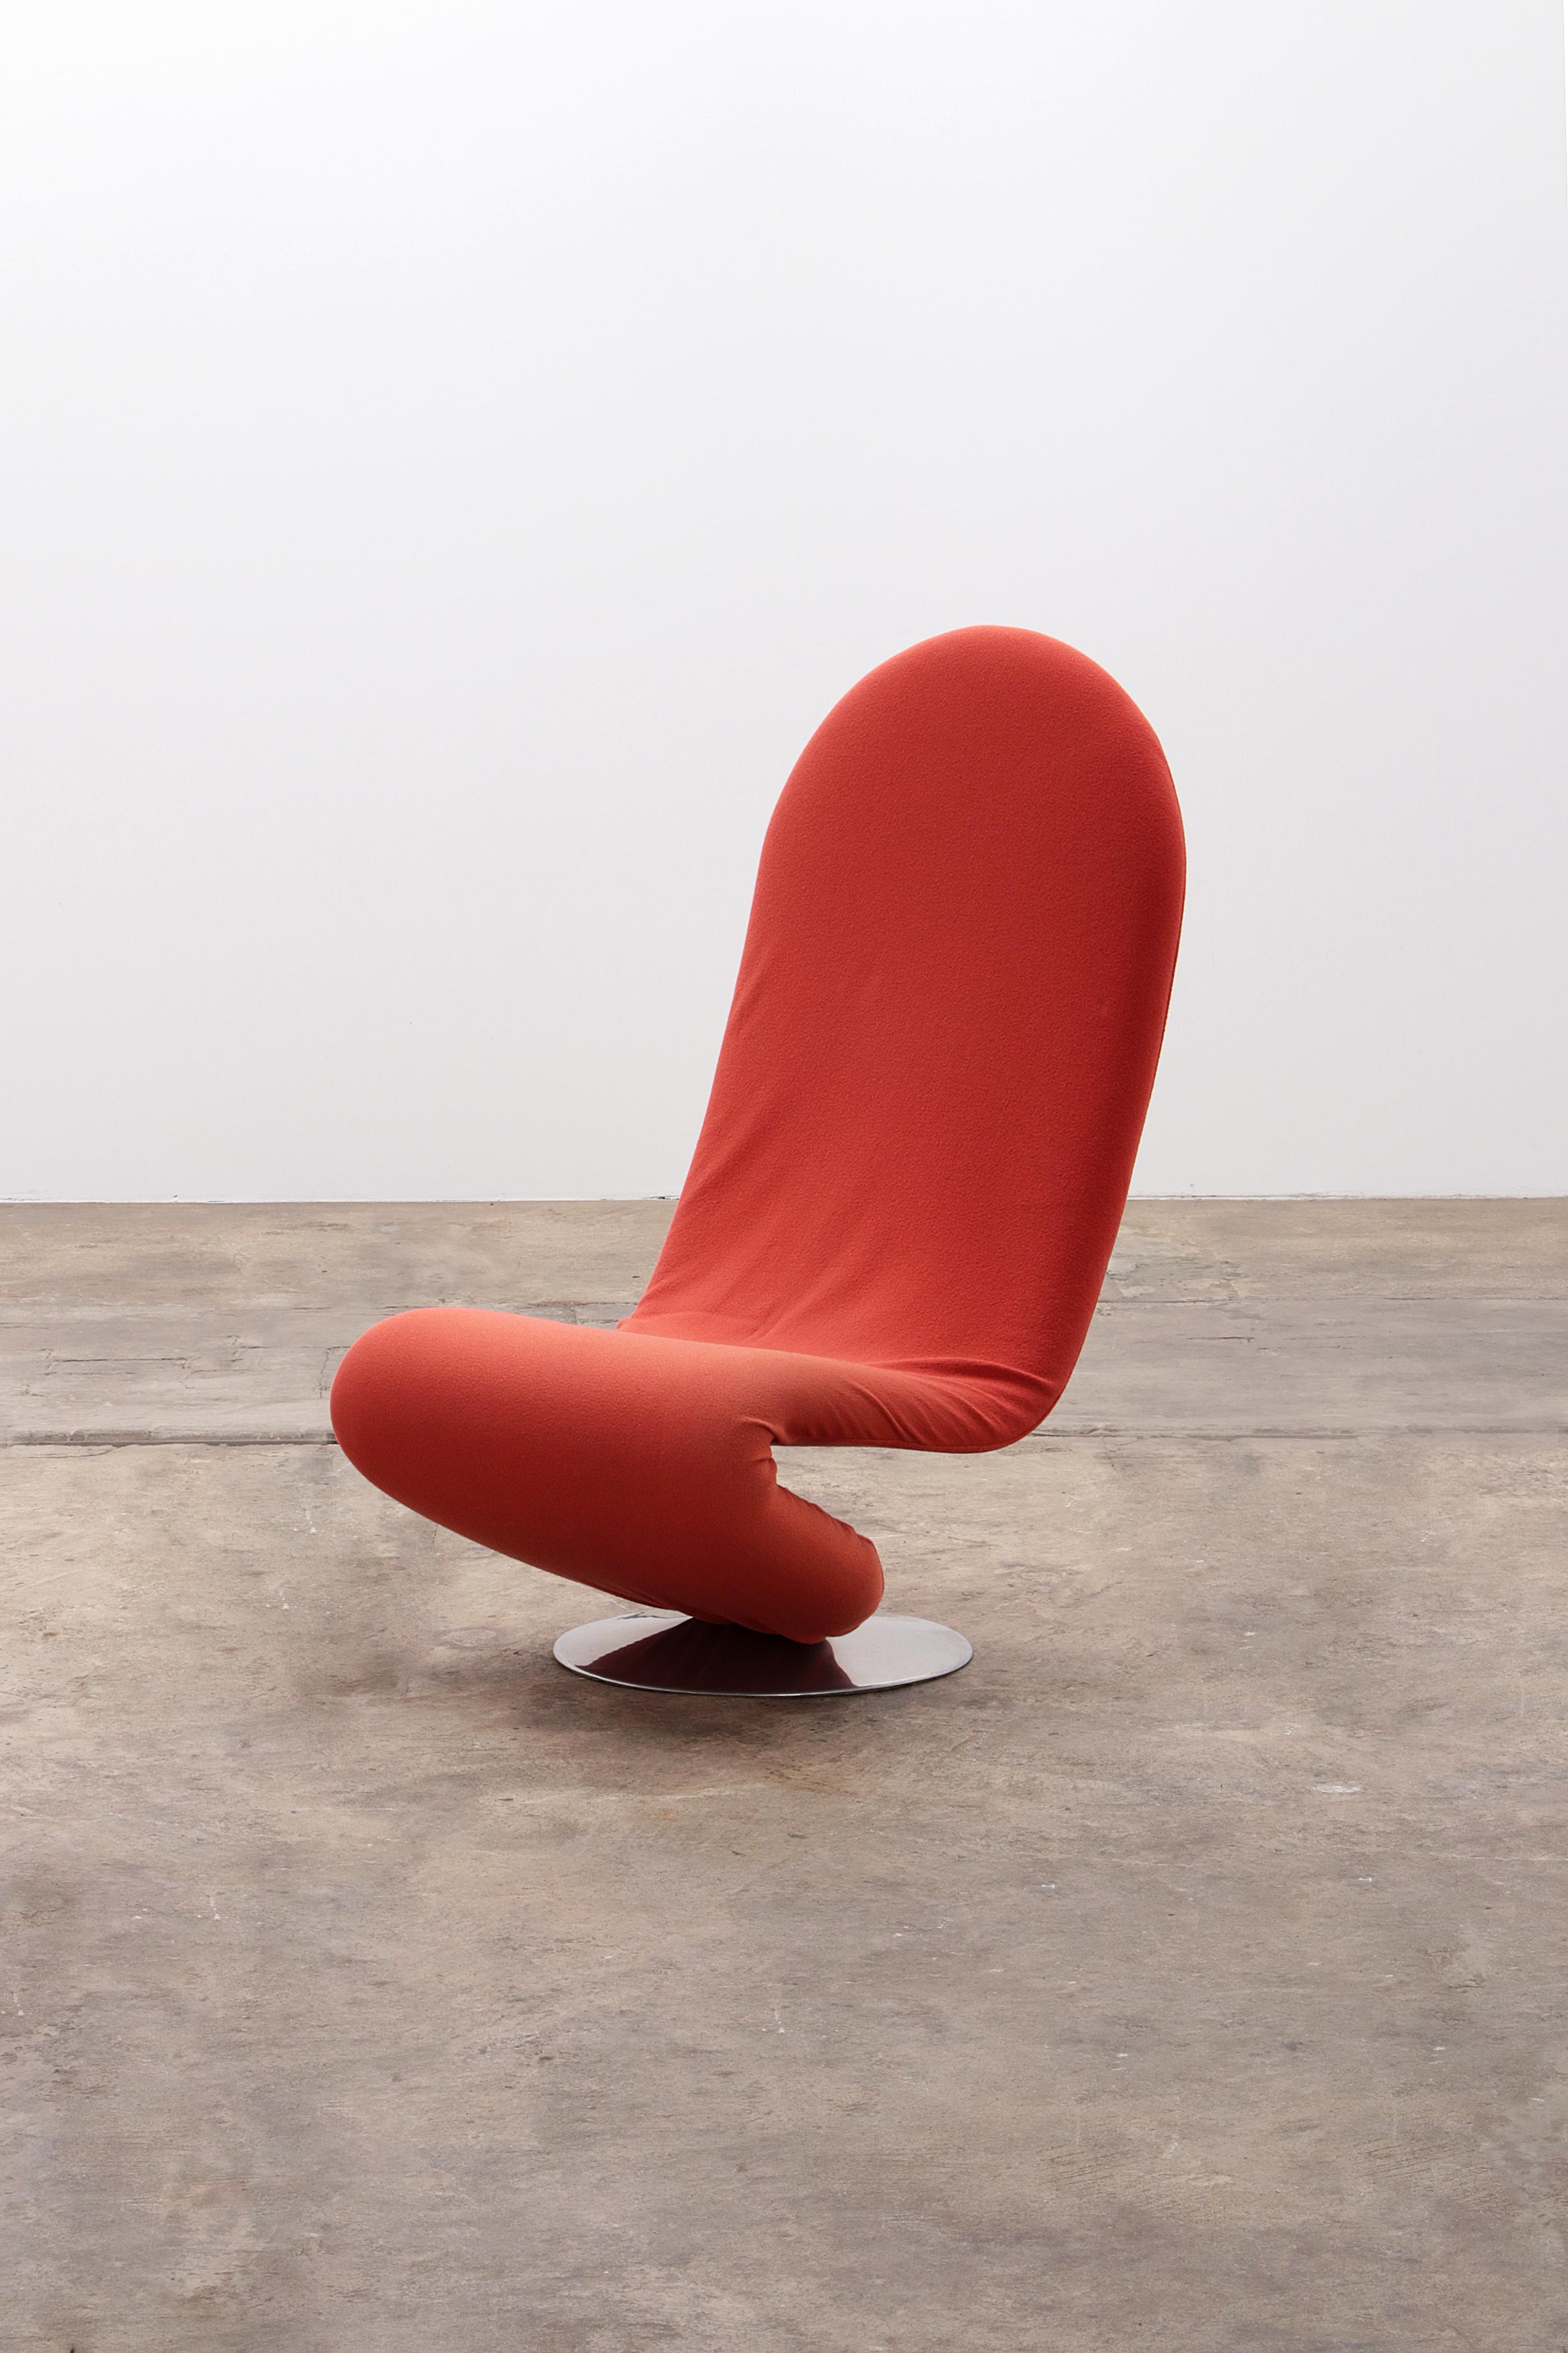 Découvrez l'emblématique chaise 1-2-3 de Fritz Hansen, conçue par le légendaire designer danois Verner Panton. Ce modèle rare 